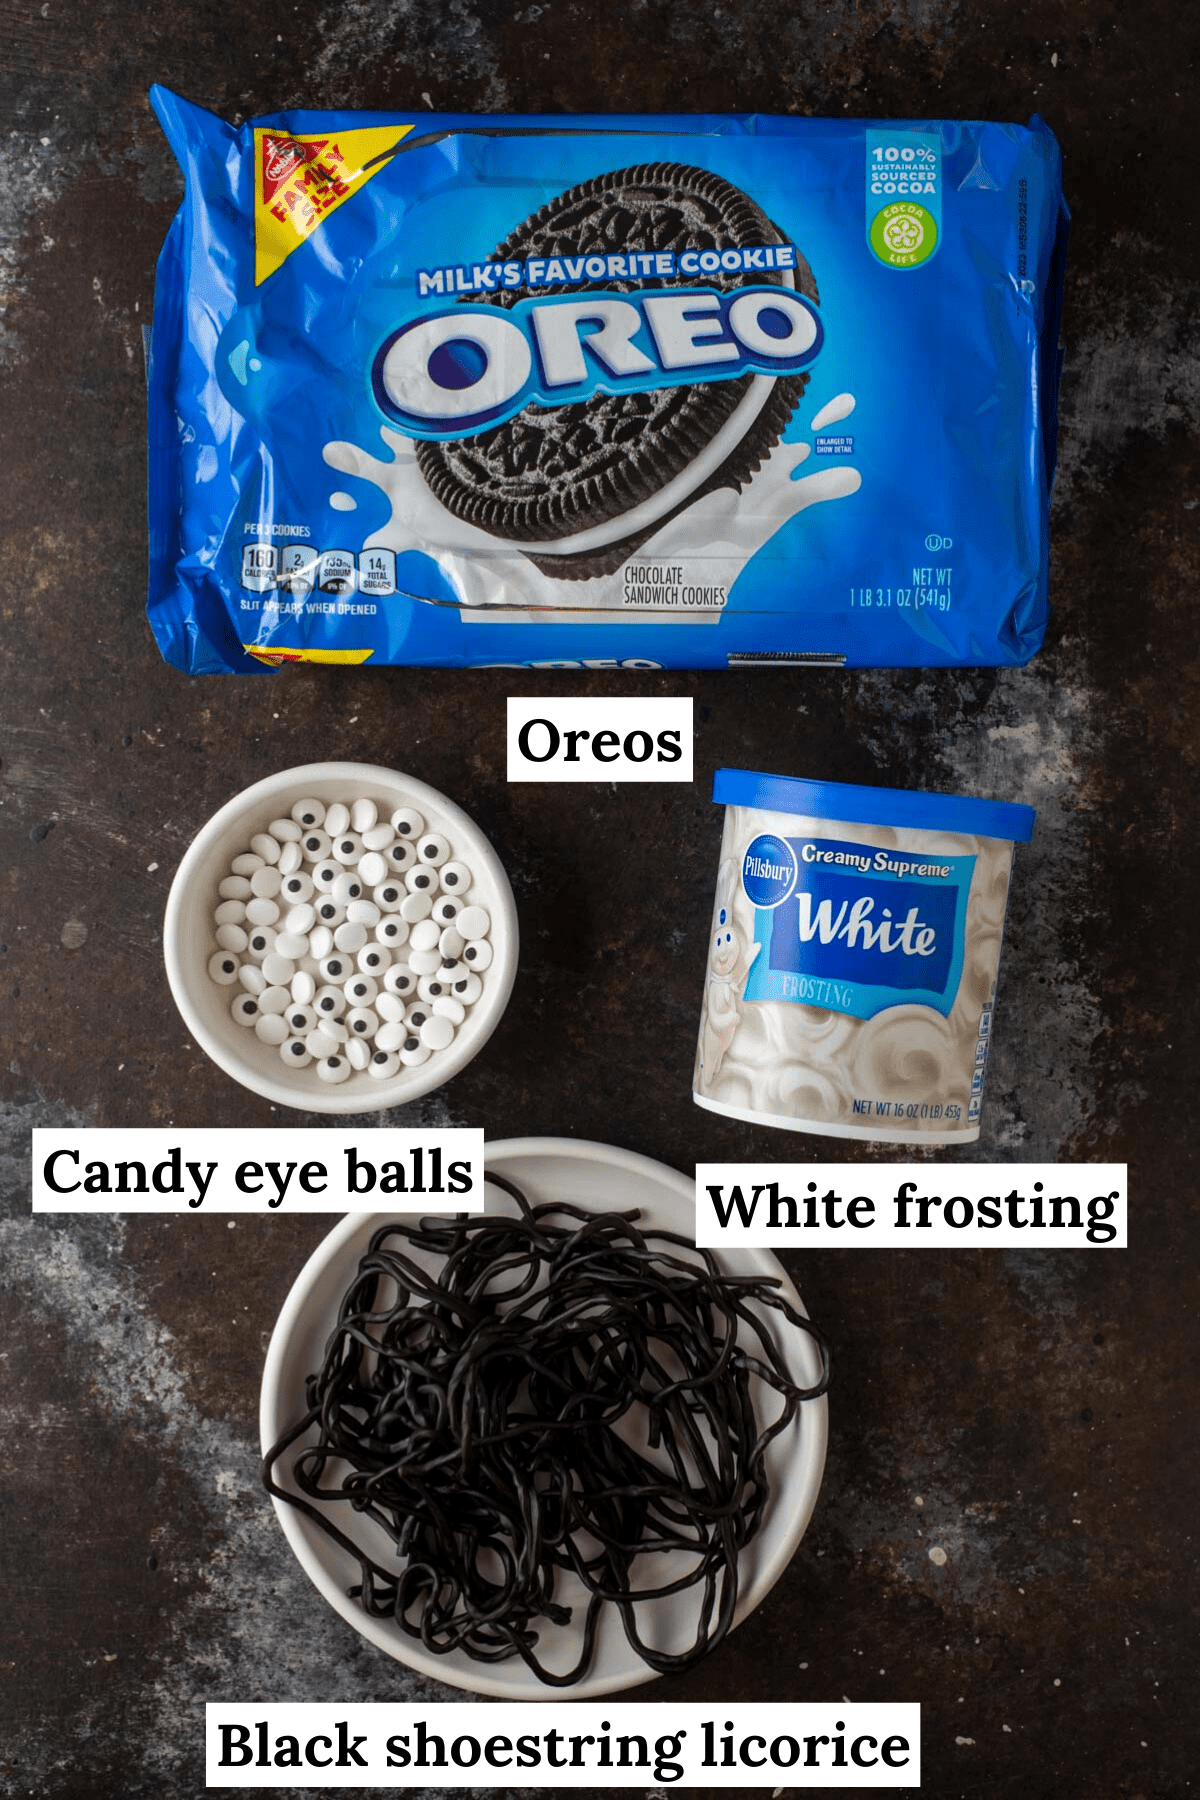 Oreo spider cookie ingredients